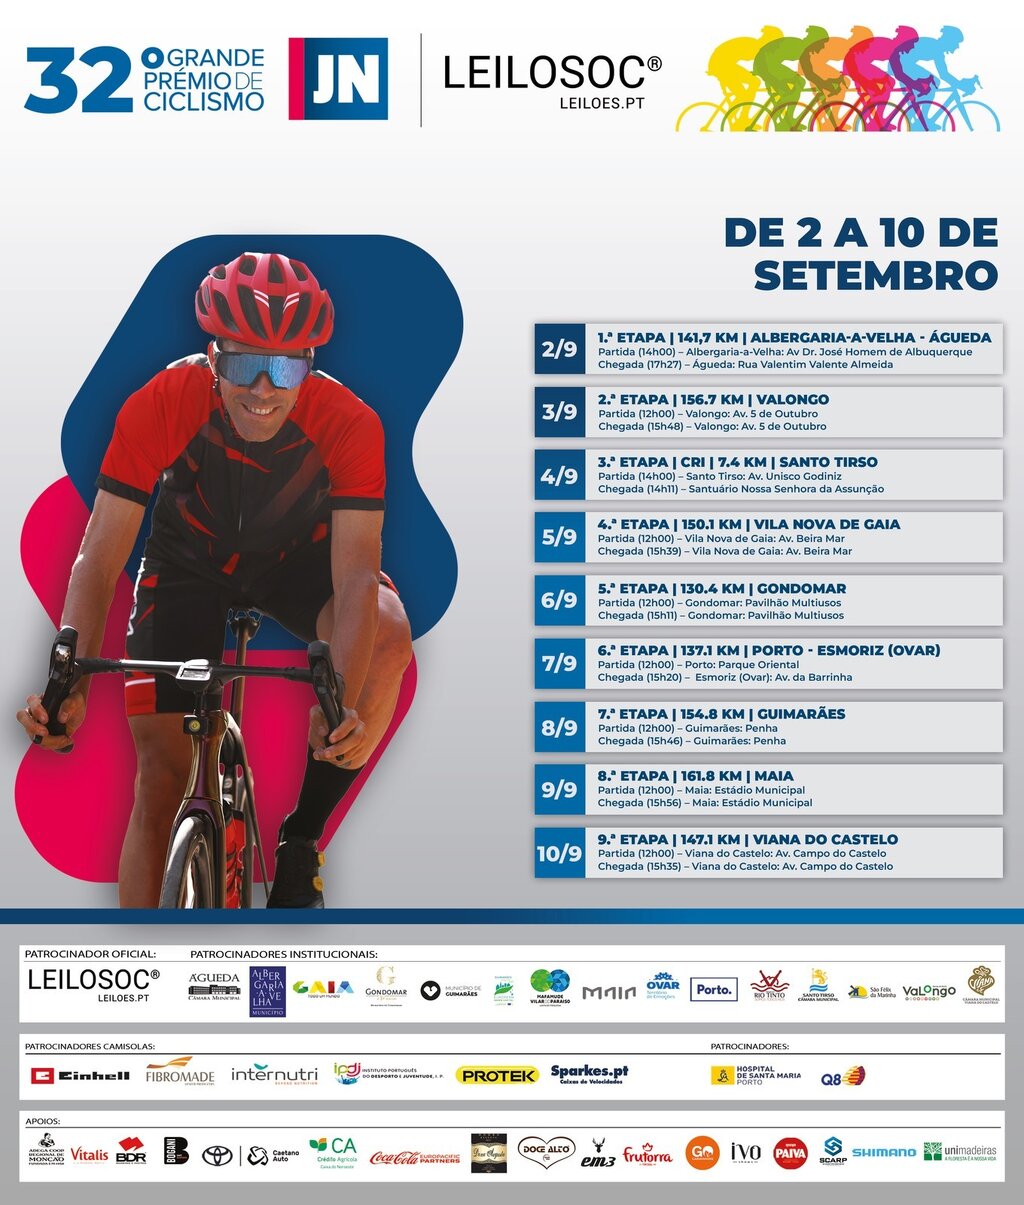 32. º Grande Prémio de Ciclismo Jornal de Notícias | Leilosoc parte de Albergaria-a-Velha